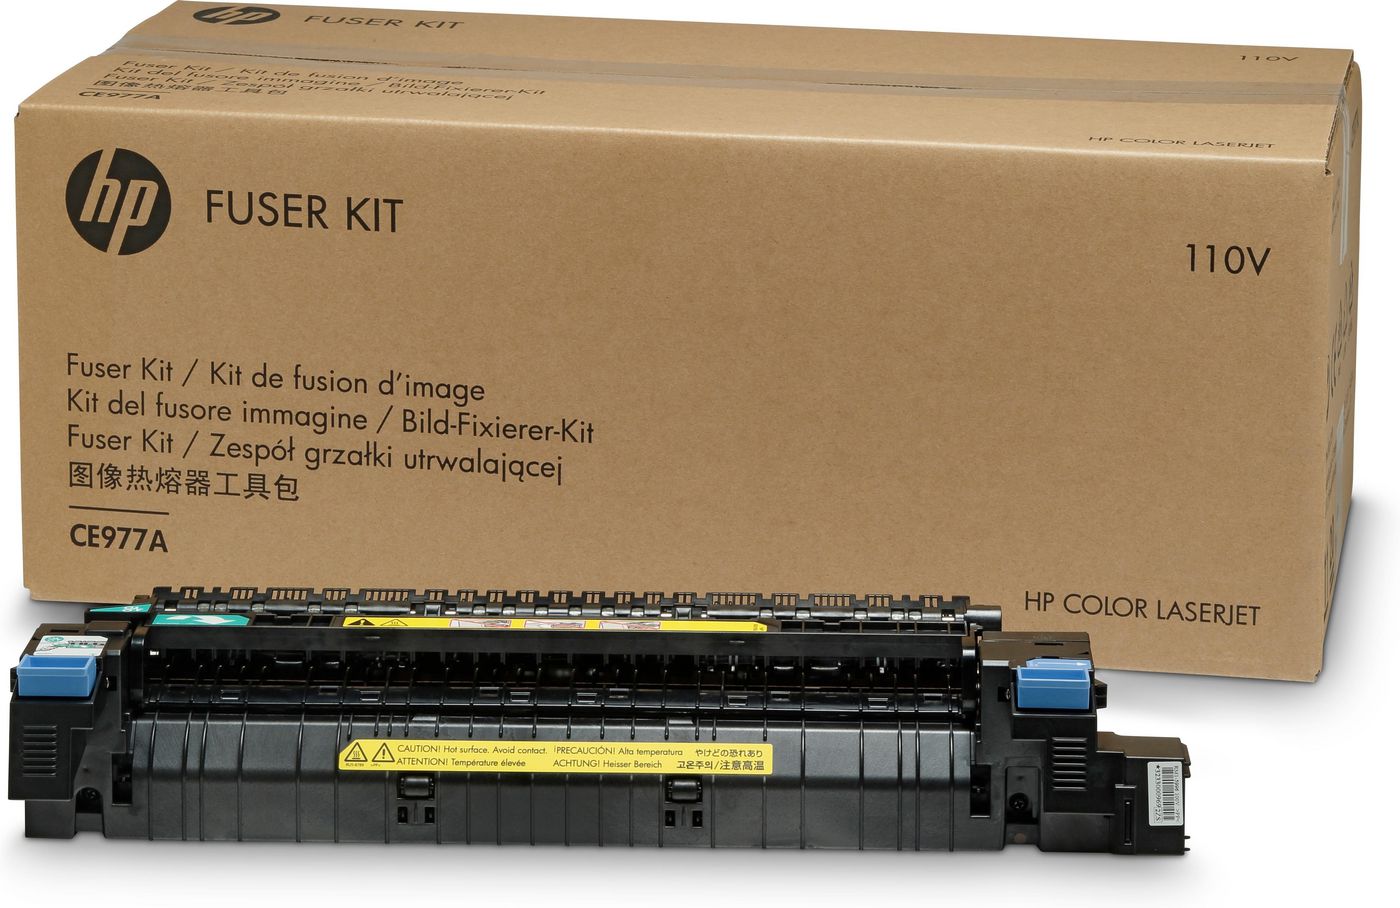 HP CE978A Fuser Kit  220V 